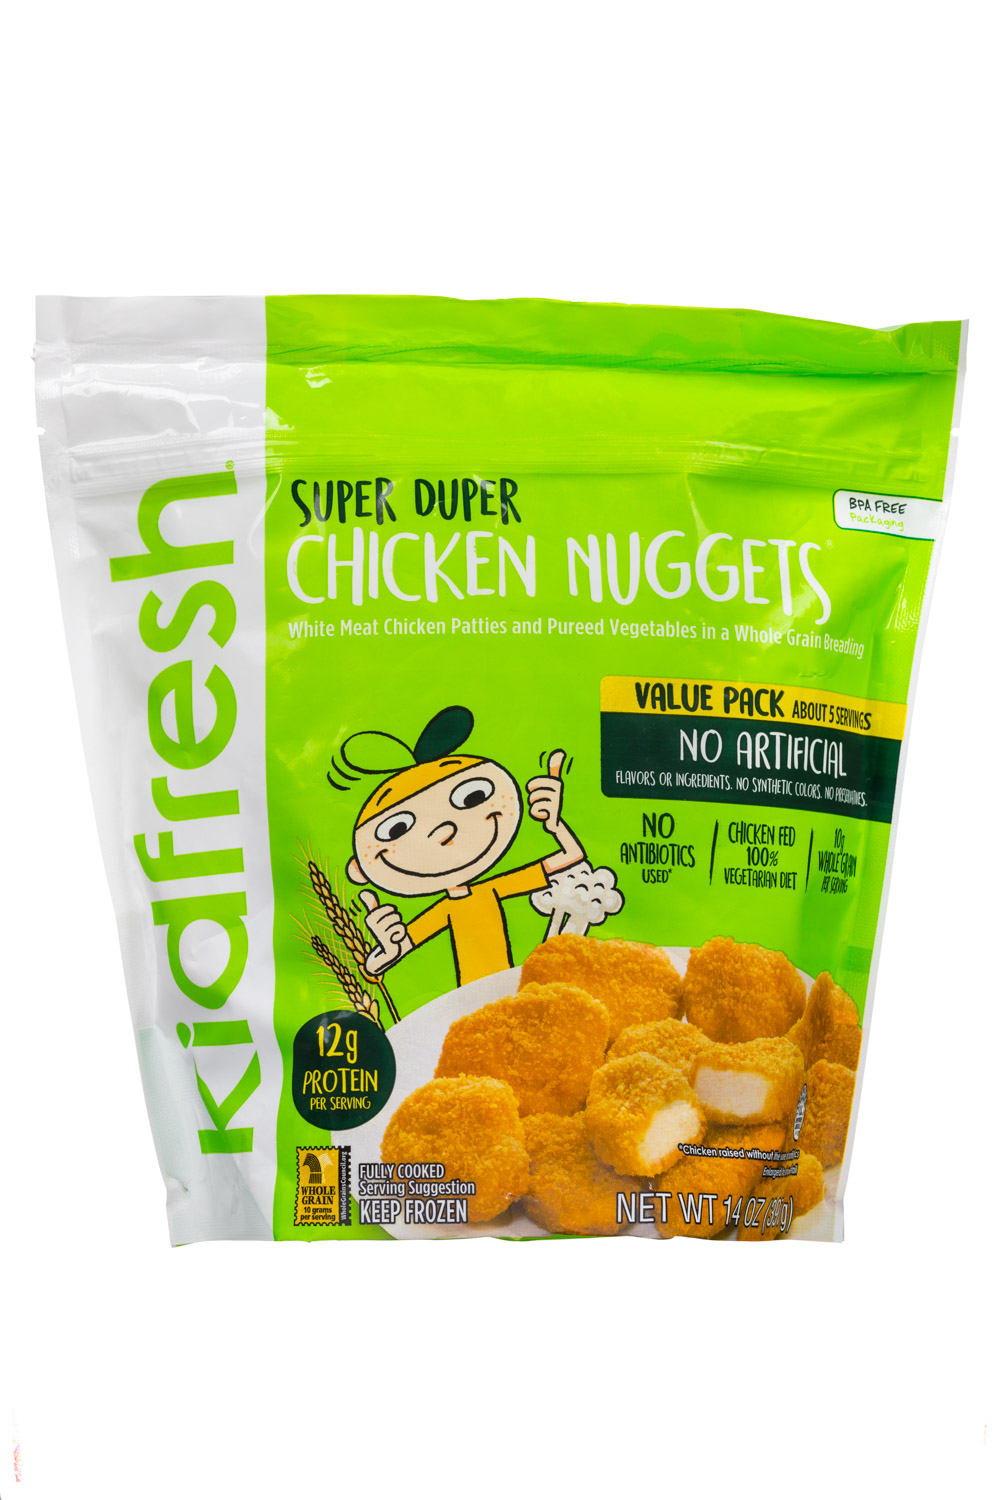 Super Duper Chicken Nuggets